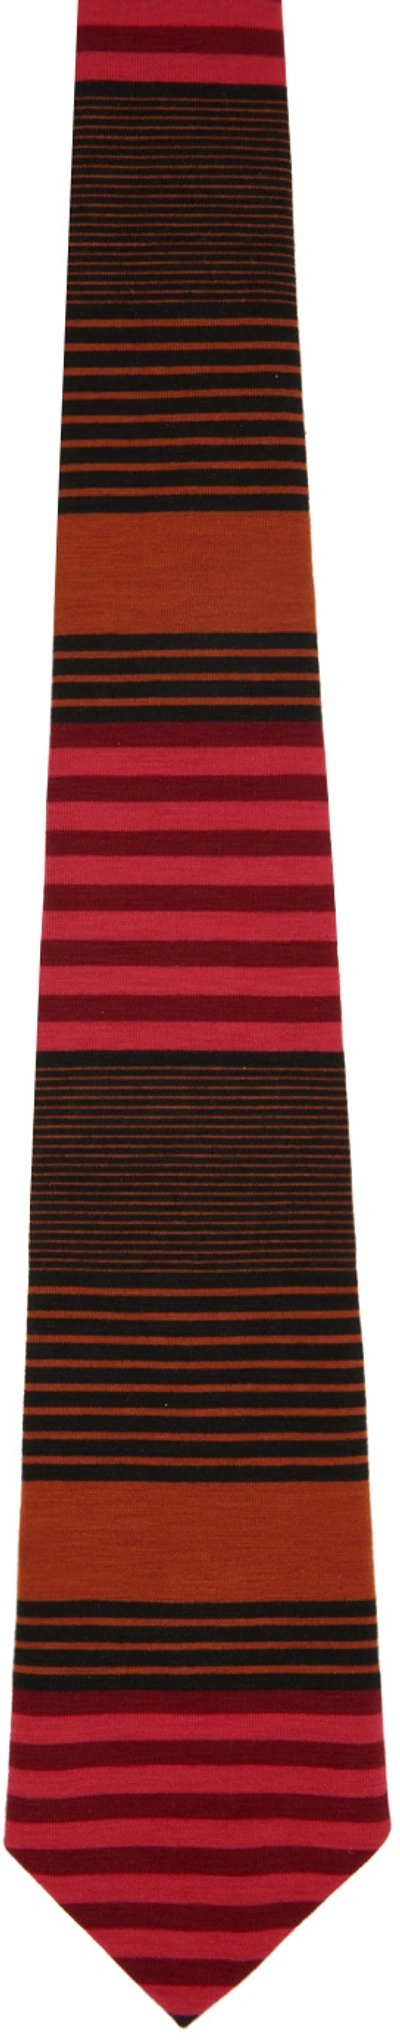 Anna Sui Ssense Exclusive Orange Stripe Tie In Orange Multi